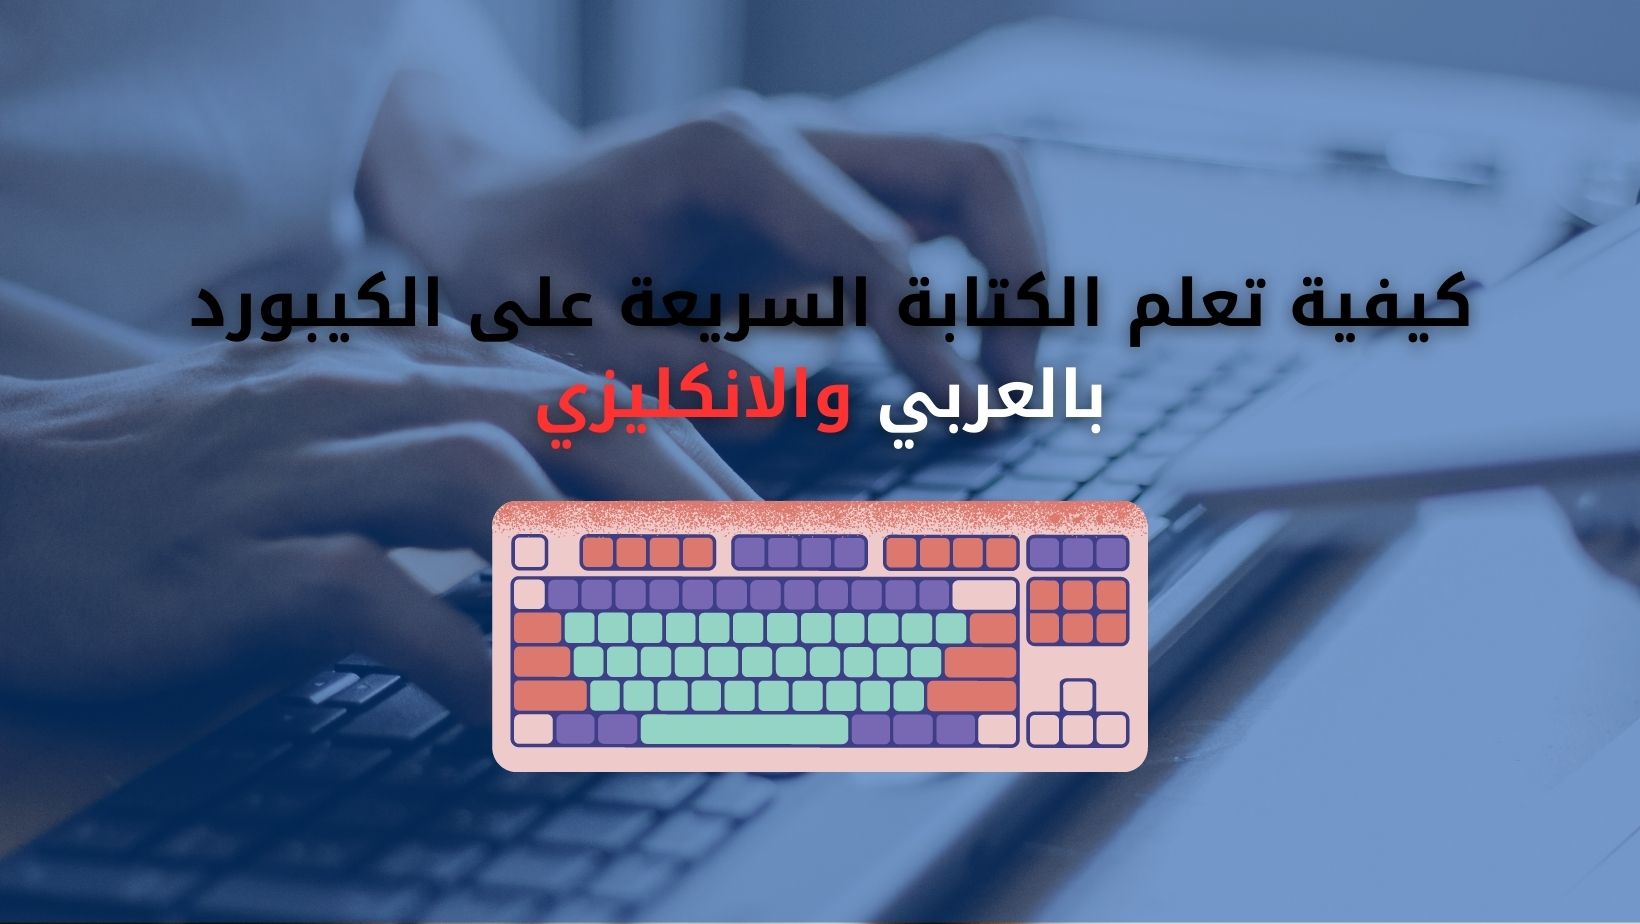 كيفية تعلم الكتابة السريعة على الكيبورد بالعربي والانكليزي